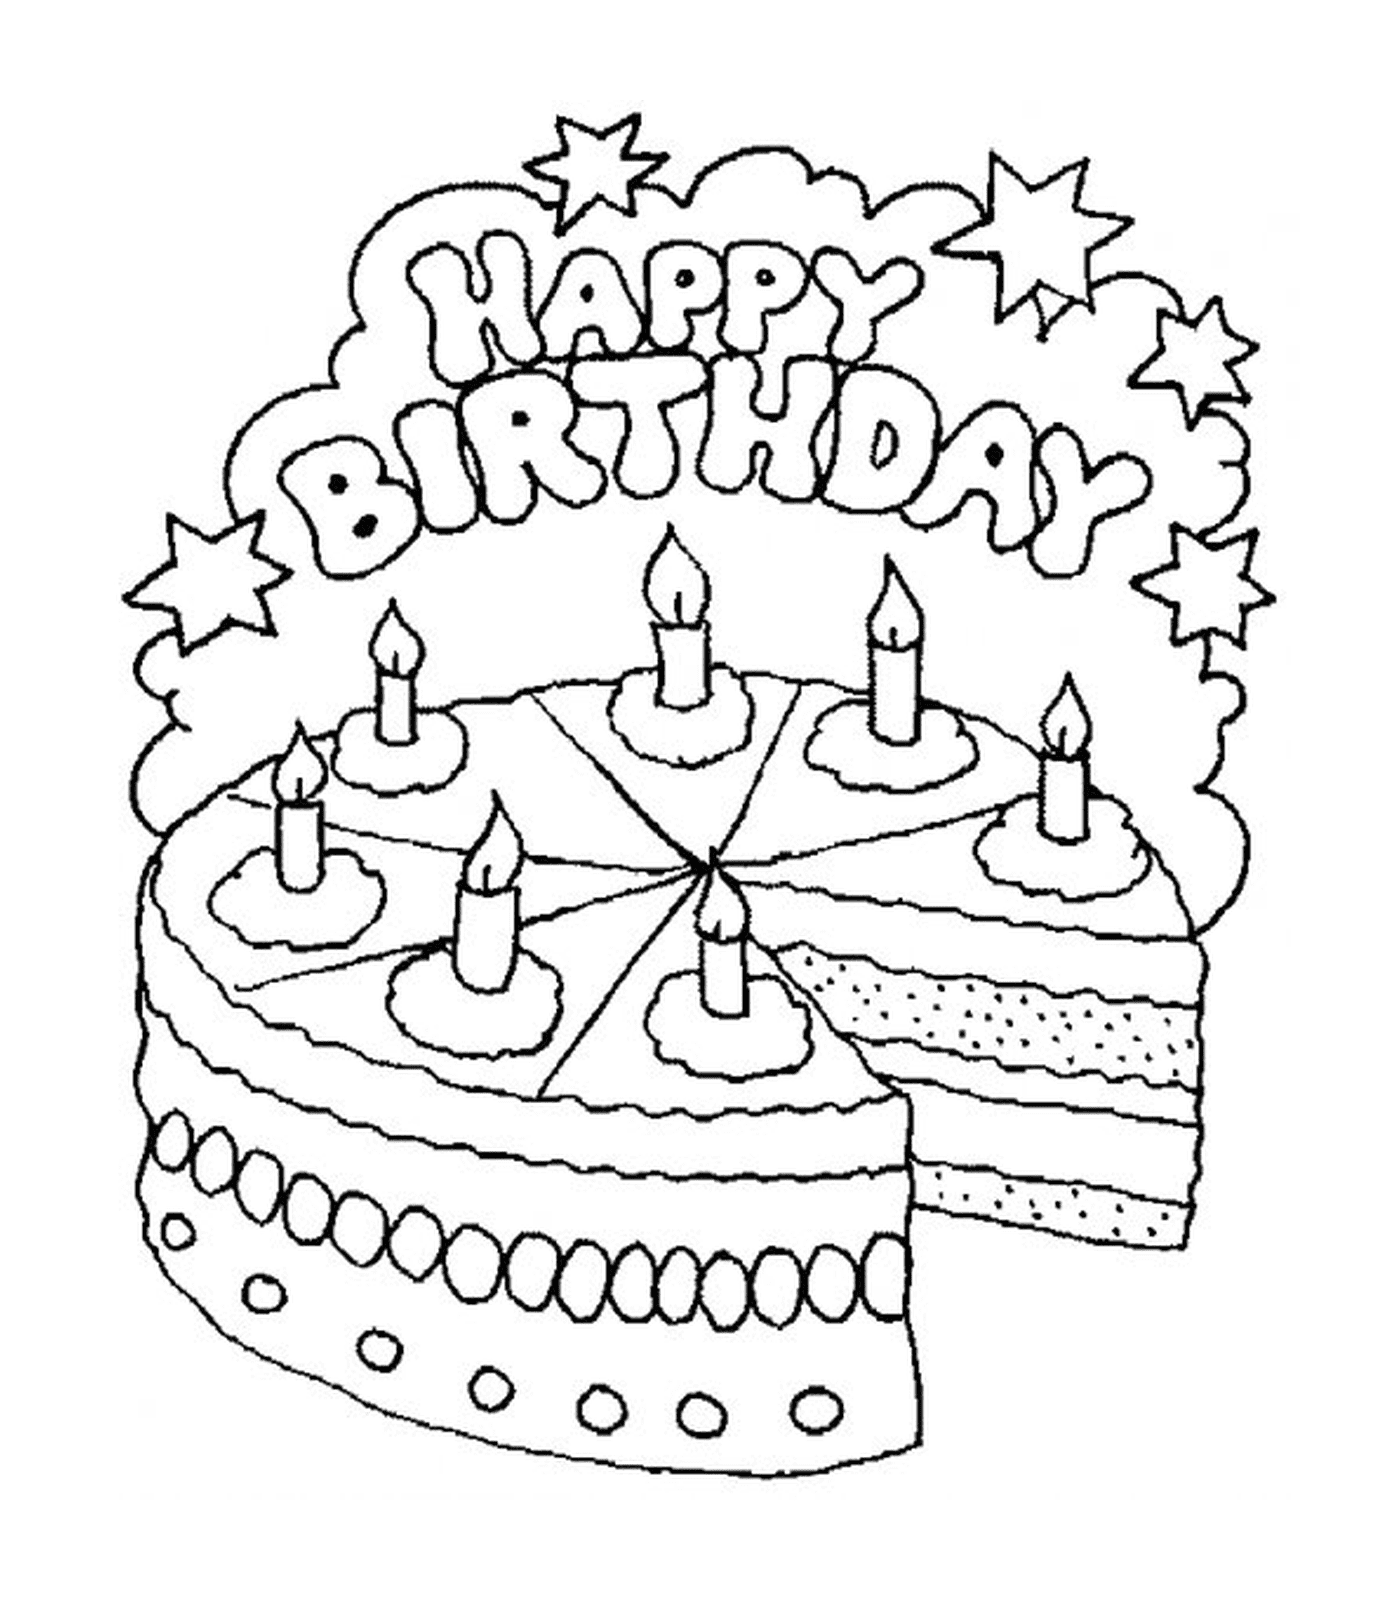  Um bolo de aniversário com seis velas 